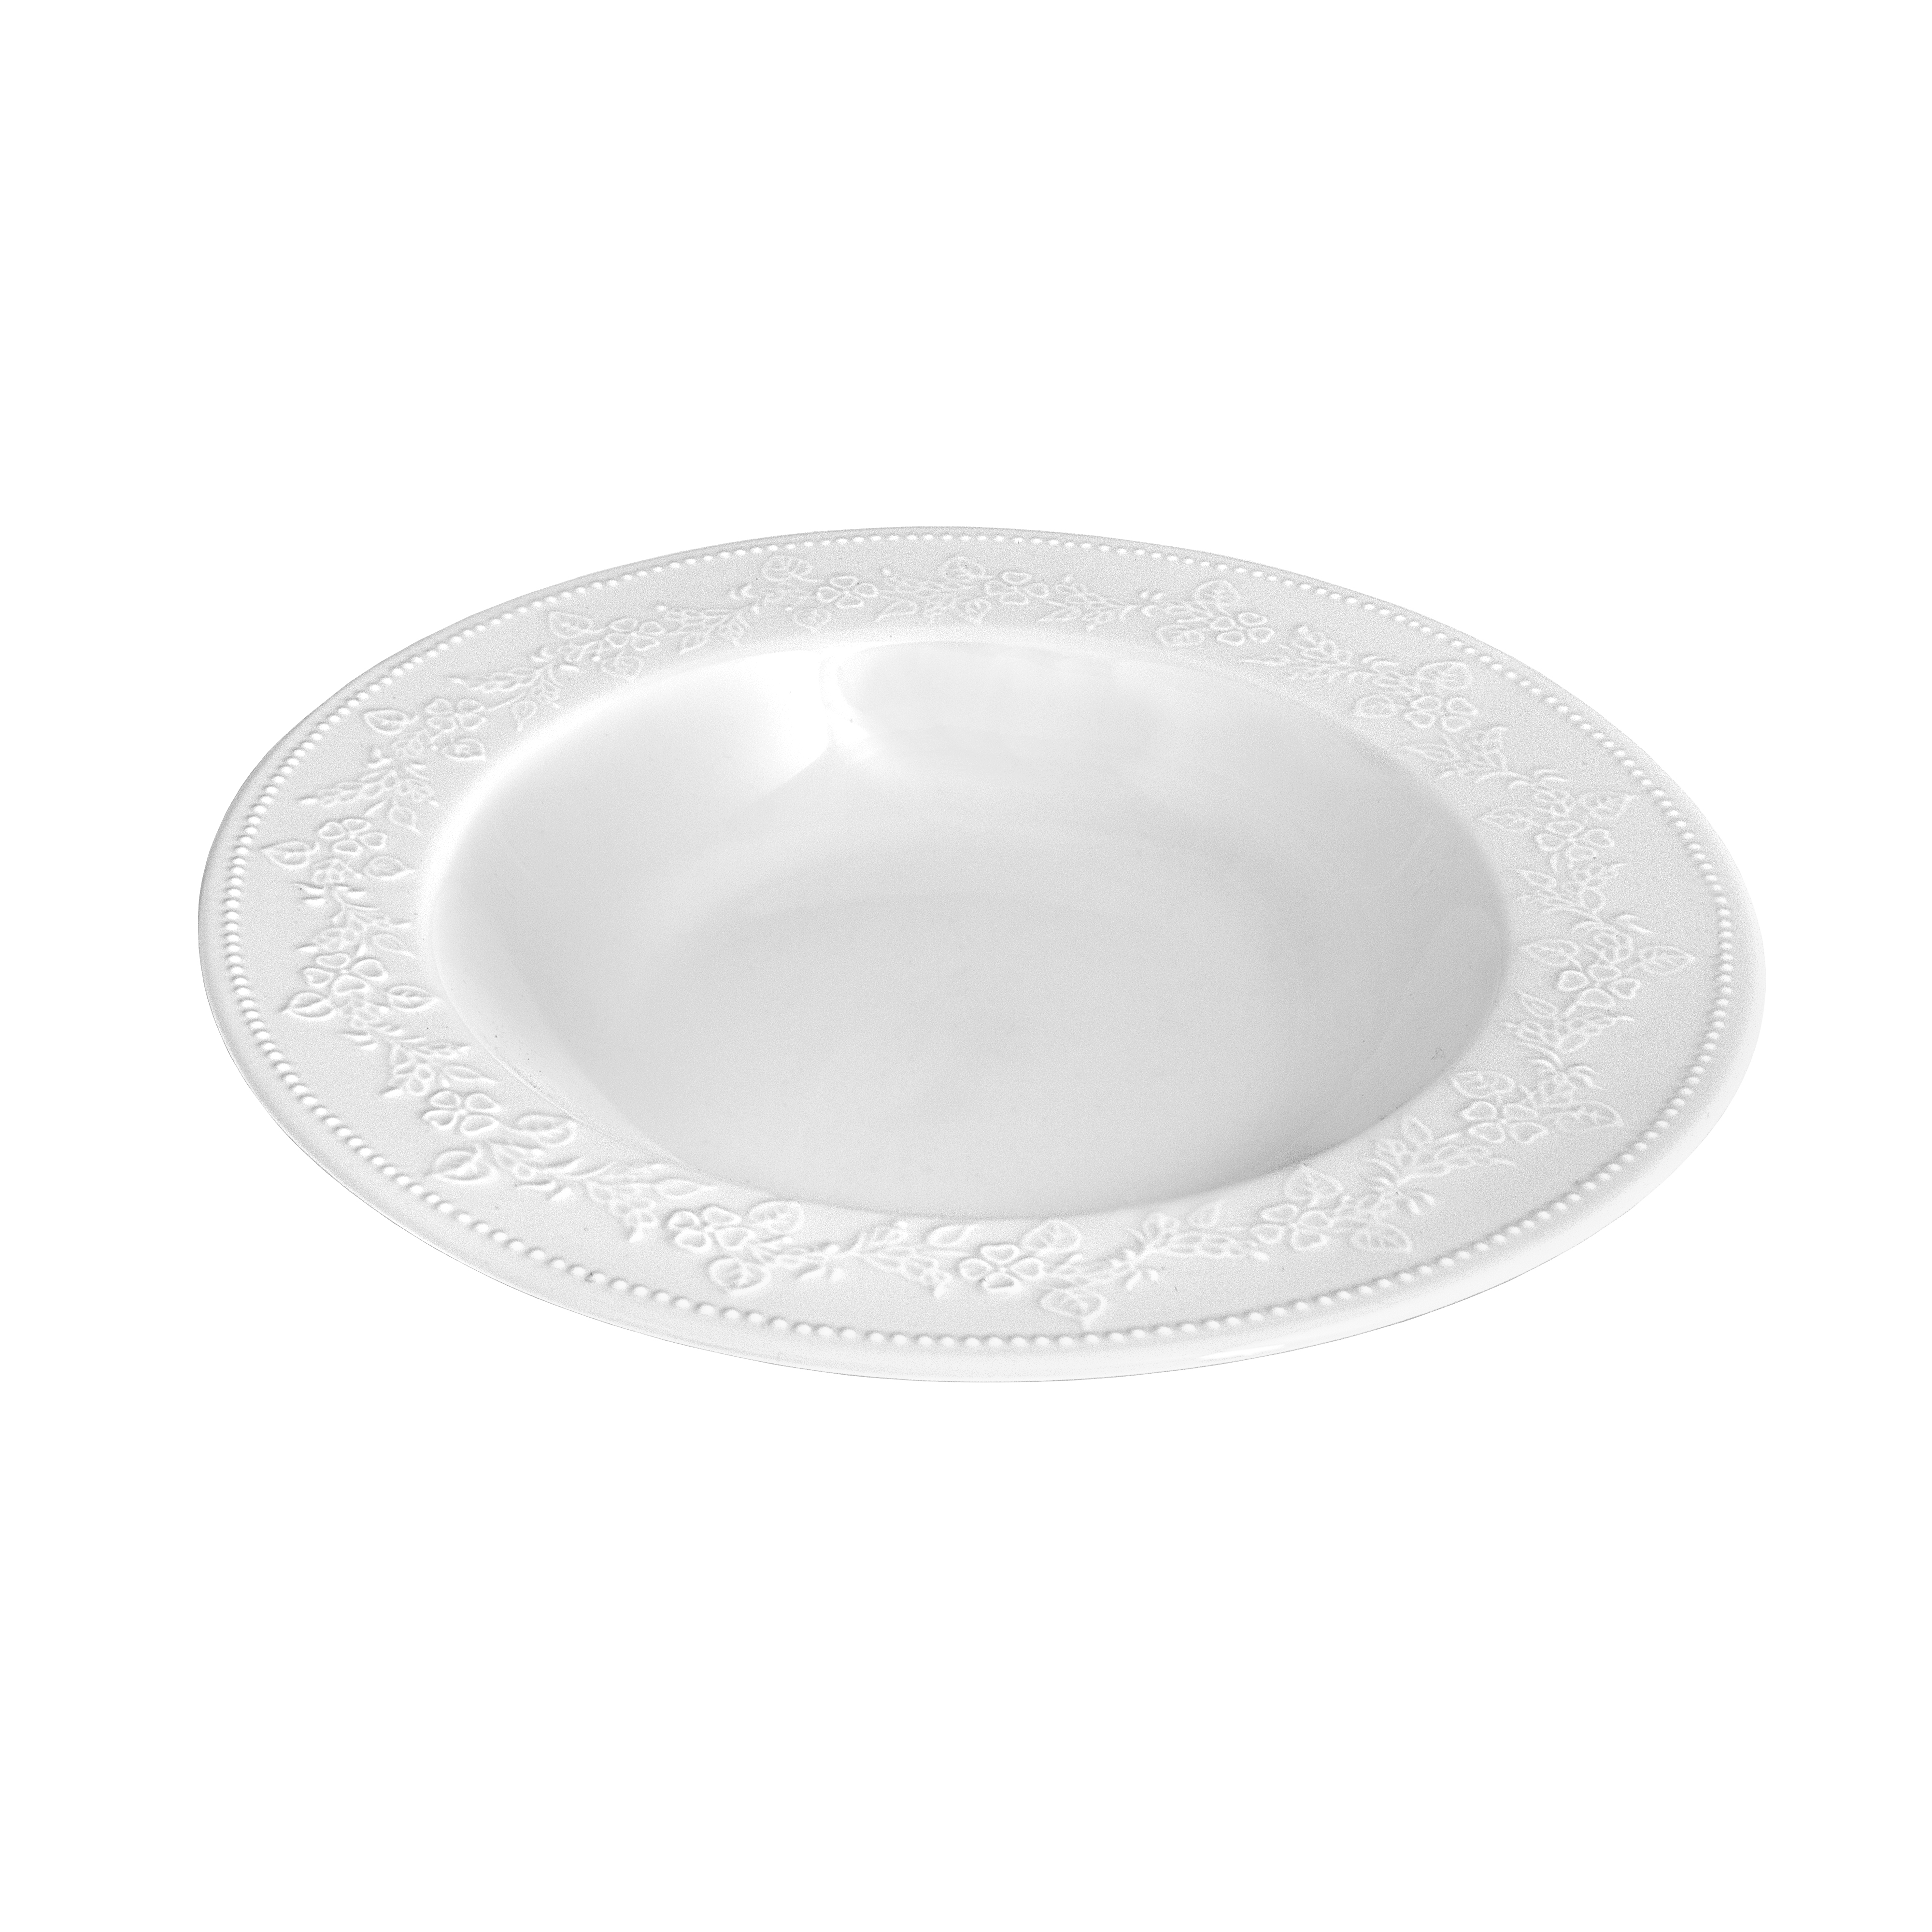 Πιάτο Βαθύ Πορσελάνης Λευκό Kea Oriana Ferelli 23εκ. PRPW350002 (Σετ 6 Τεμάχια) (Υλικό: Πορσελάνη, Χρώμα: Λευκό, Μέγεθος: Μεμονωμένο) - Oriana Ferelli® - PRPW350002